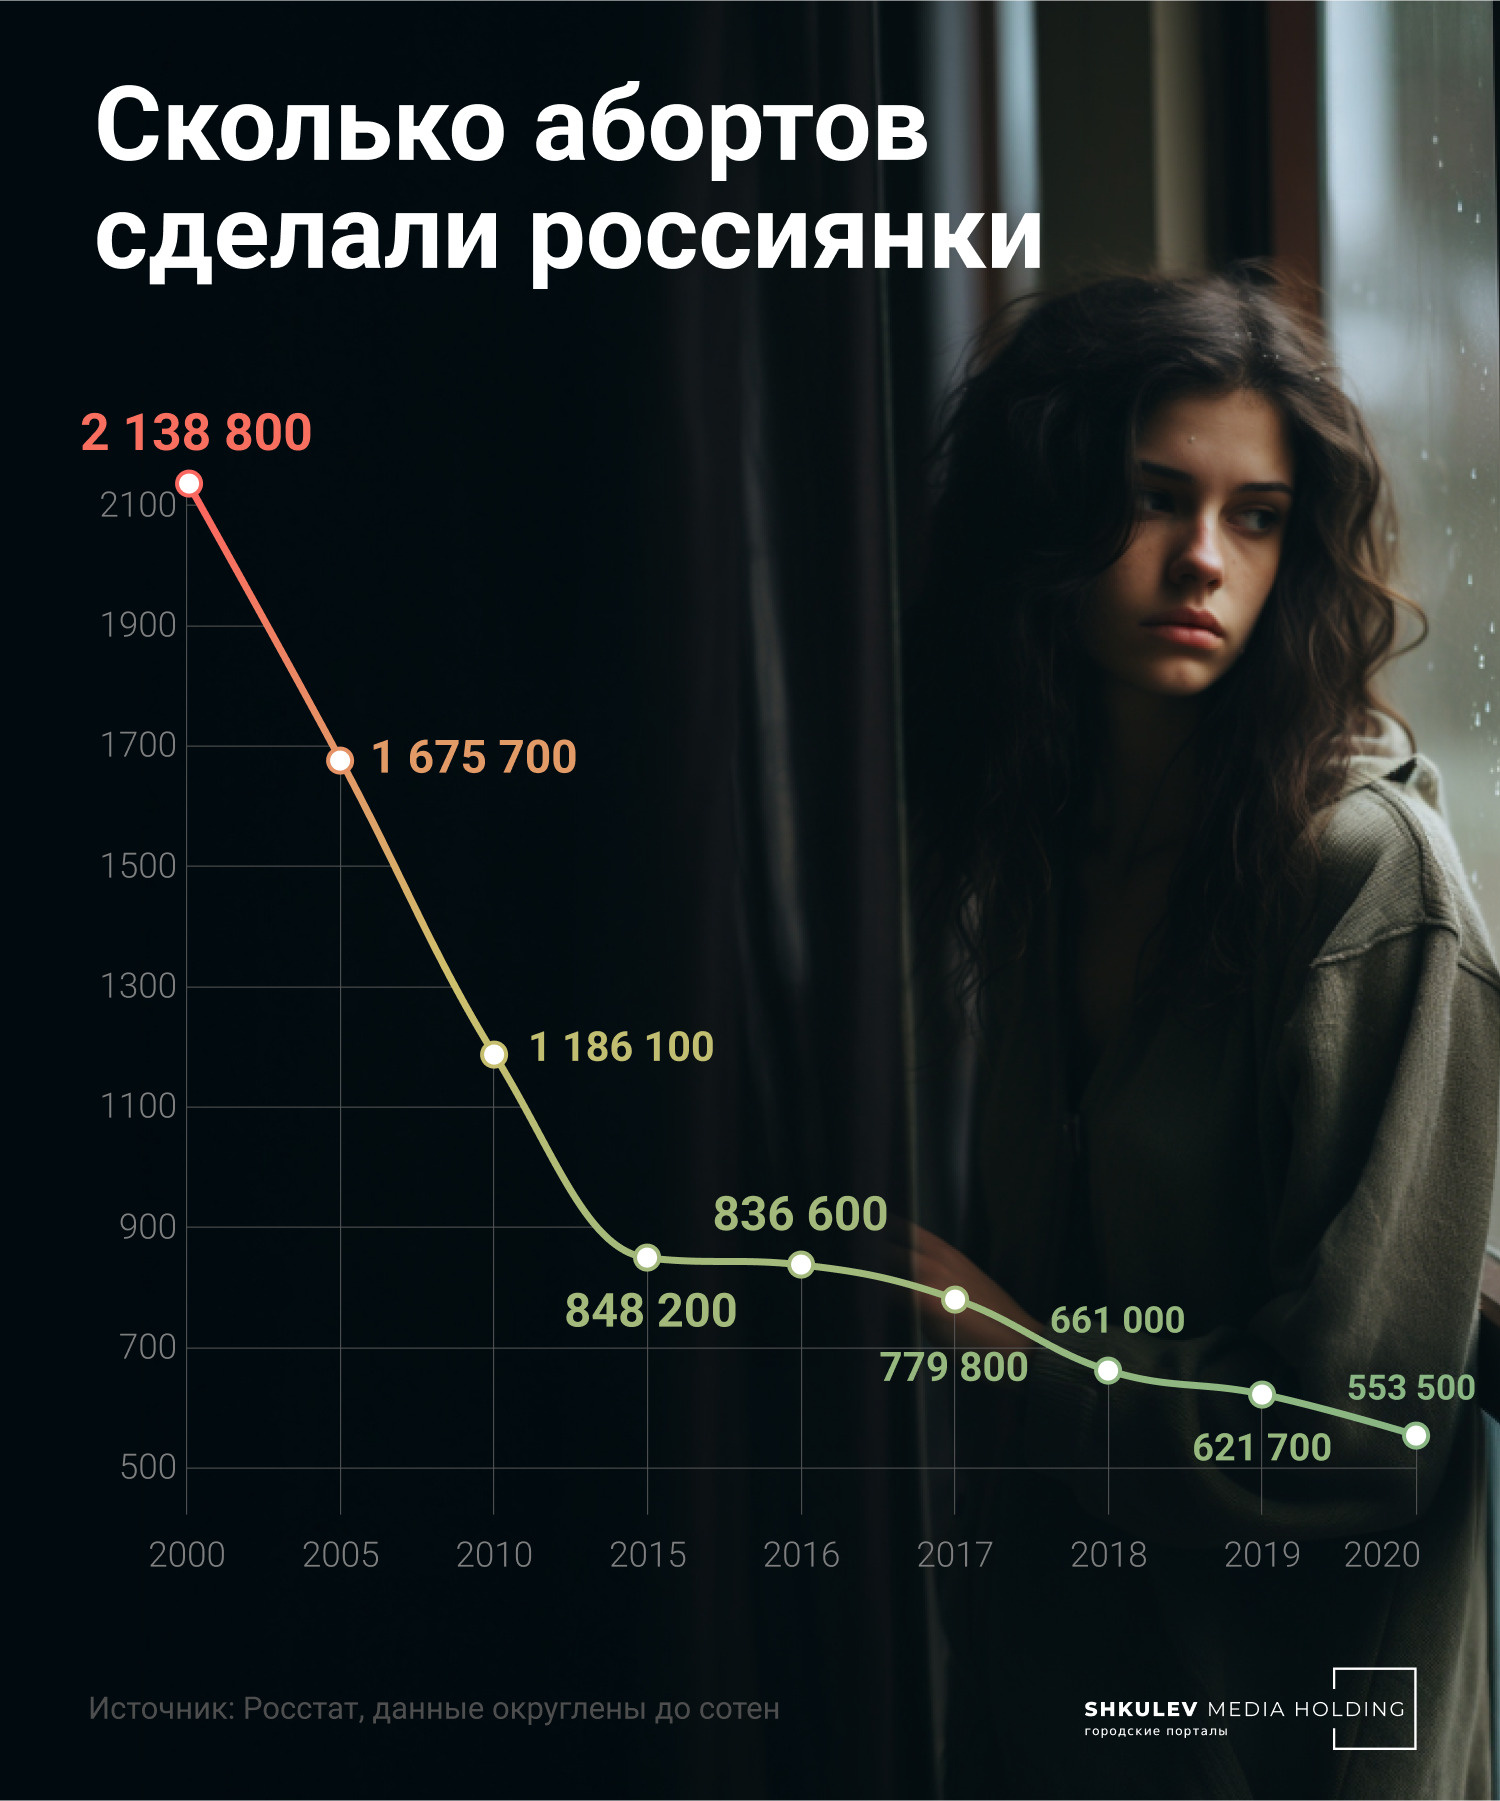 За 20 лет число абортов в России снизилось в четыре раза